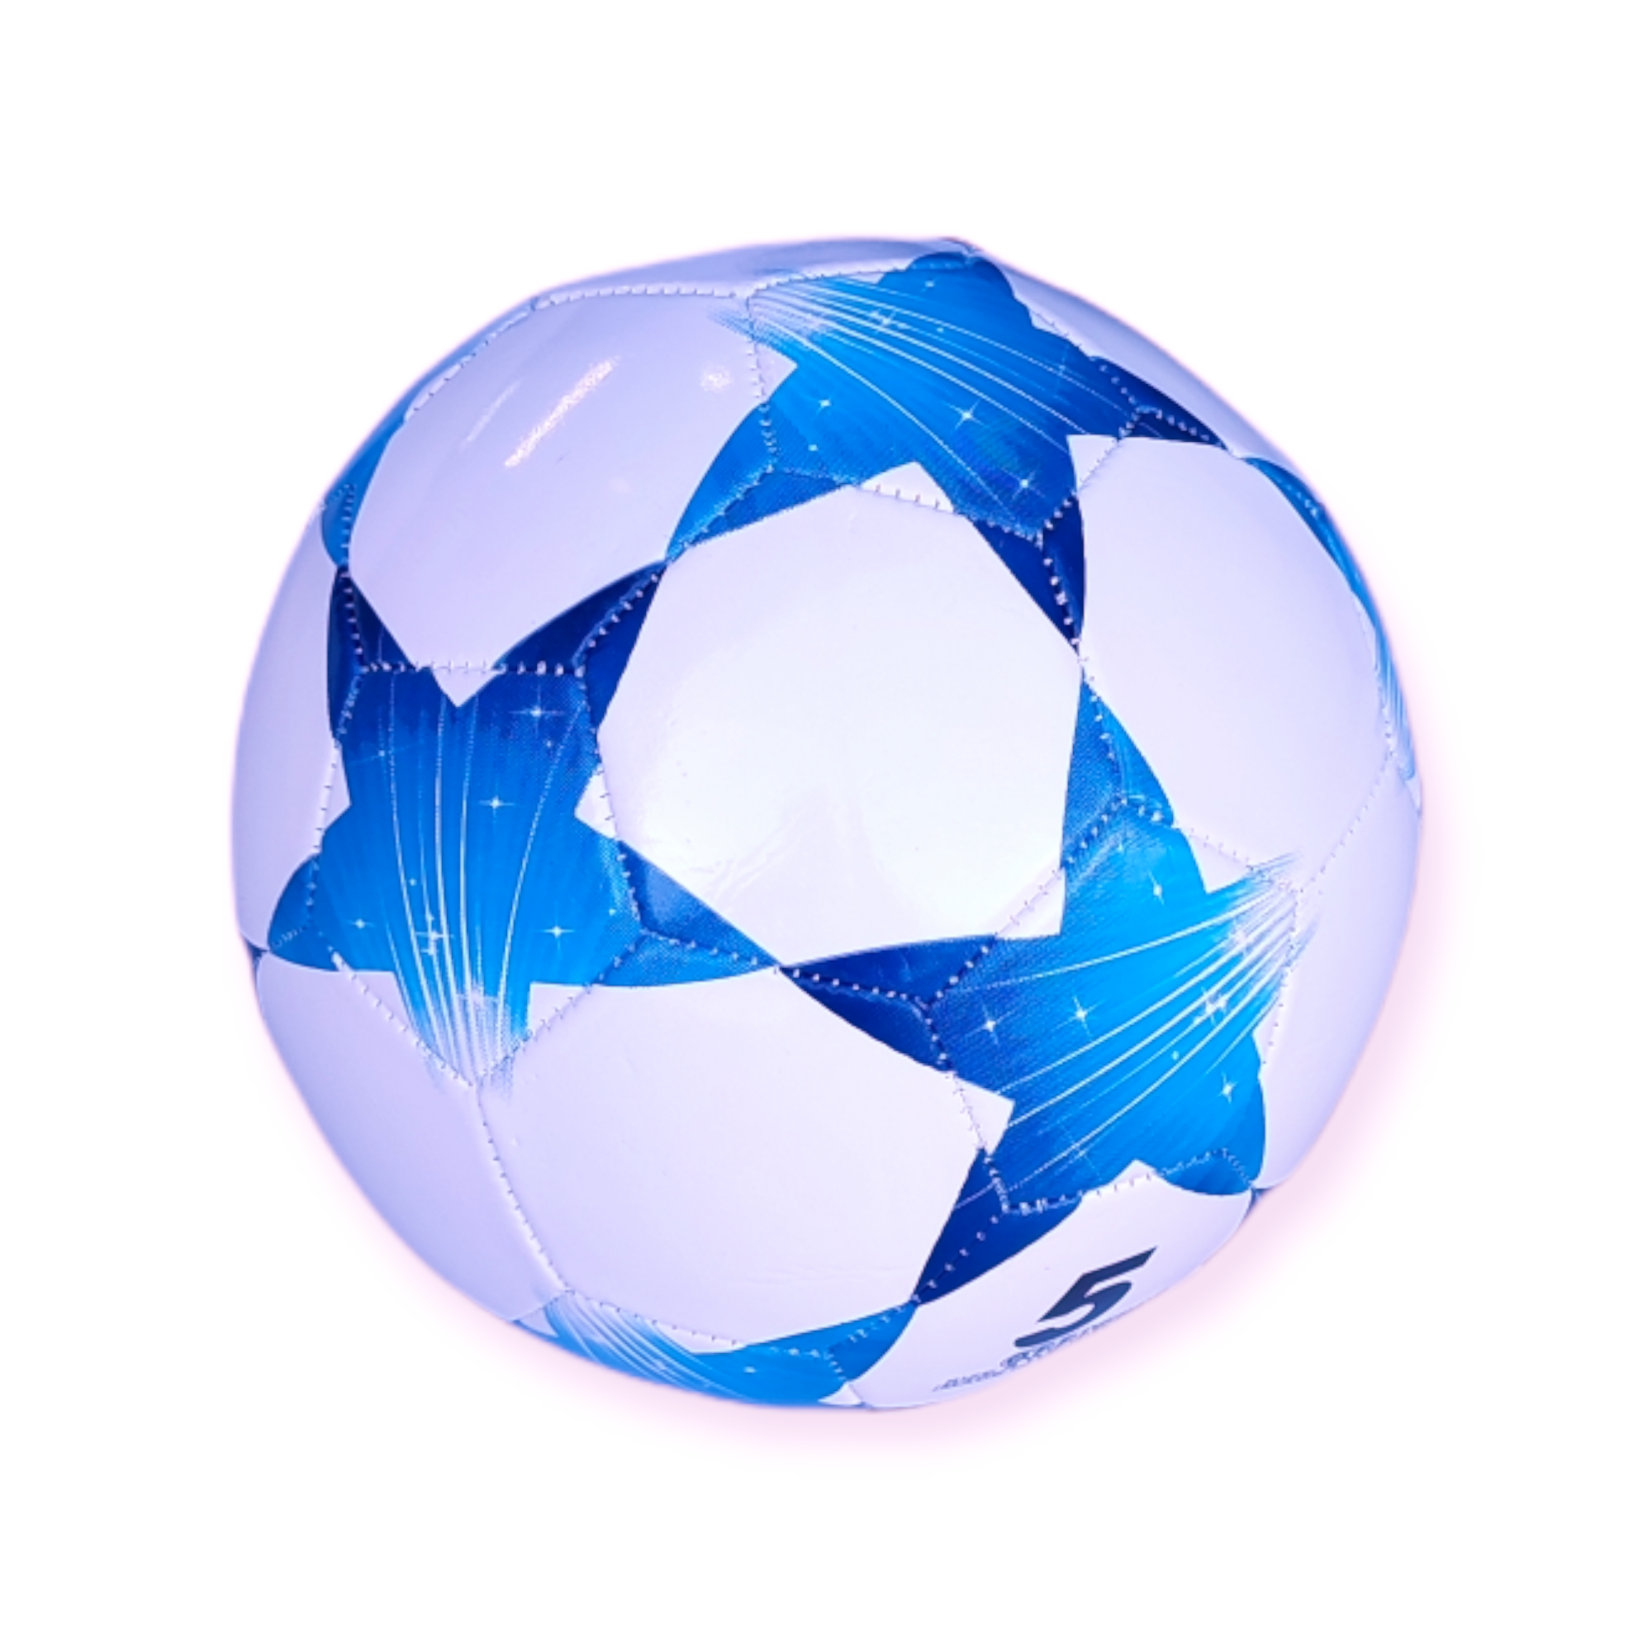 Jobber Toys - Voetbal - Sterren patroon – Bal - Wit - Blauw